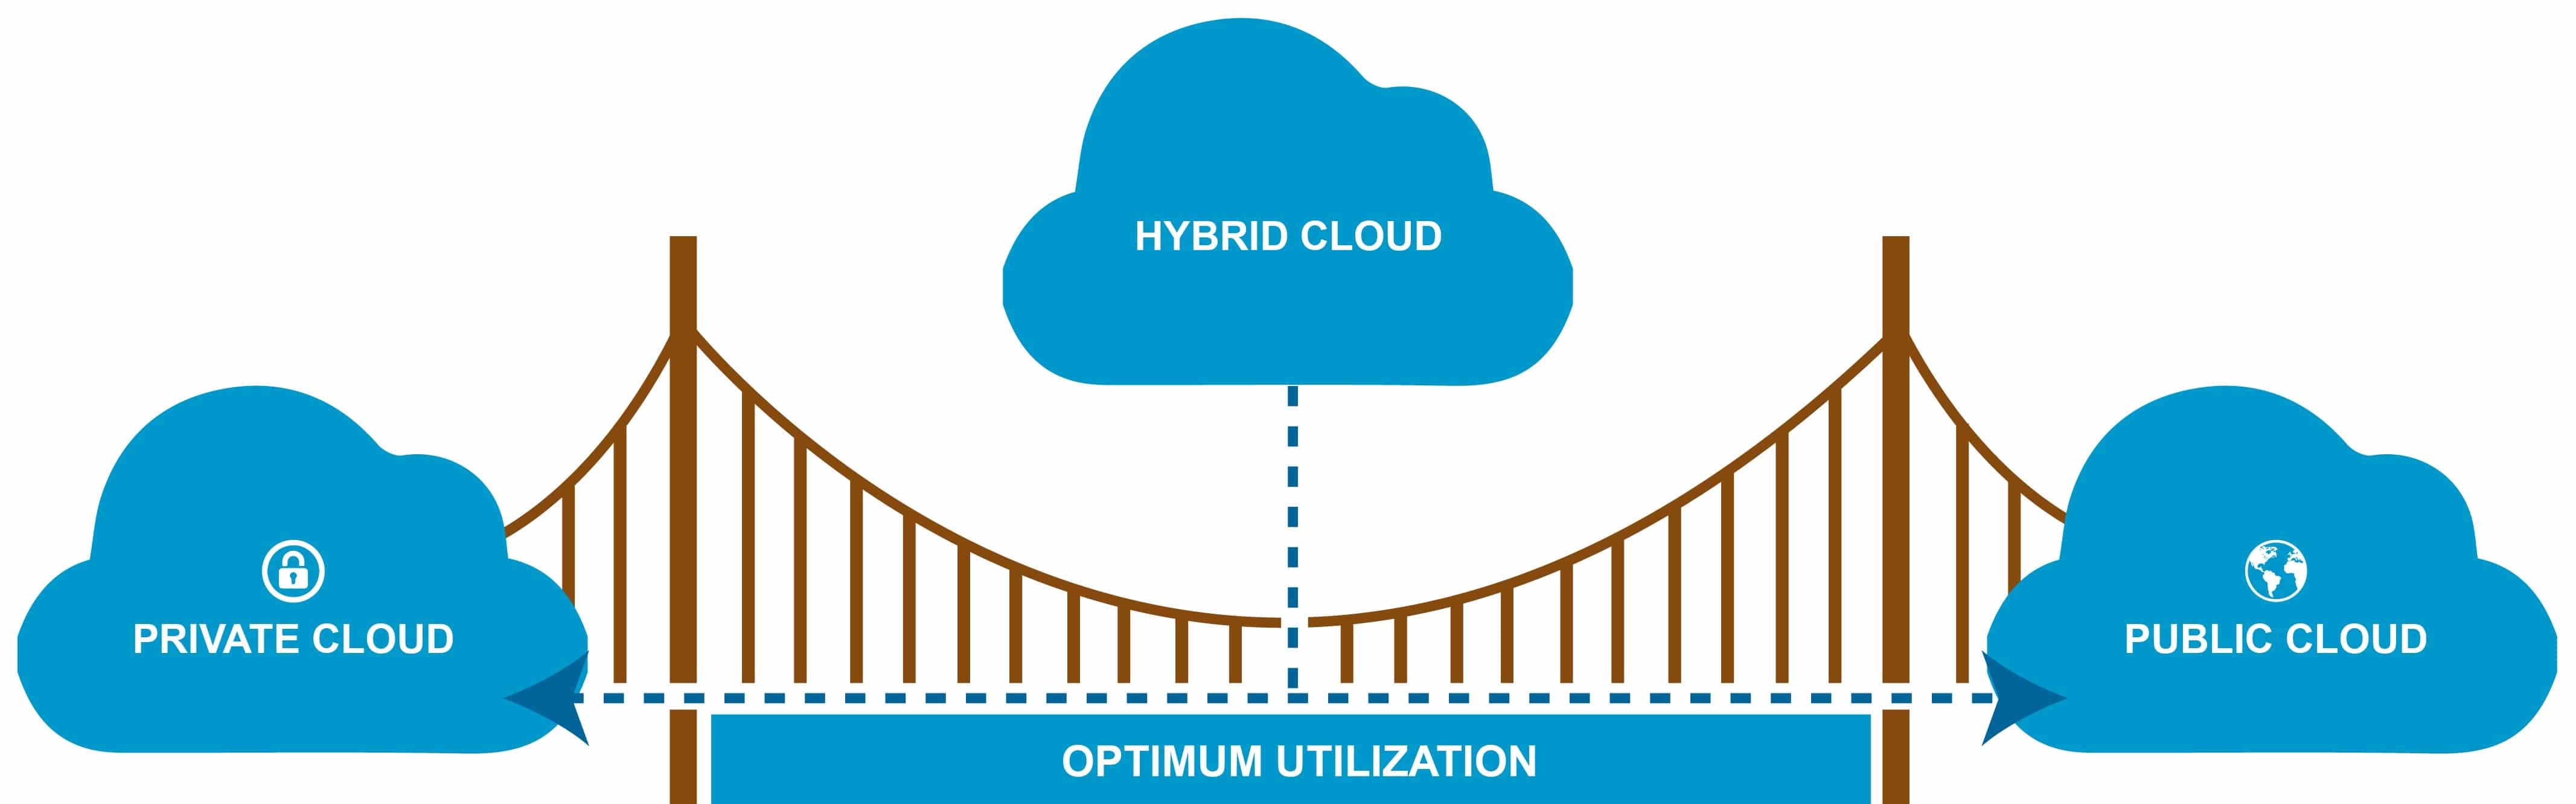 Private cloud Public cloud Hybrid cloud solutions diagram